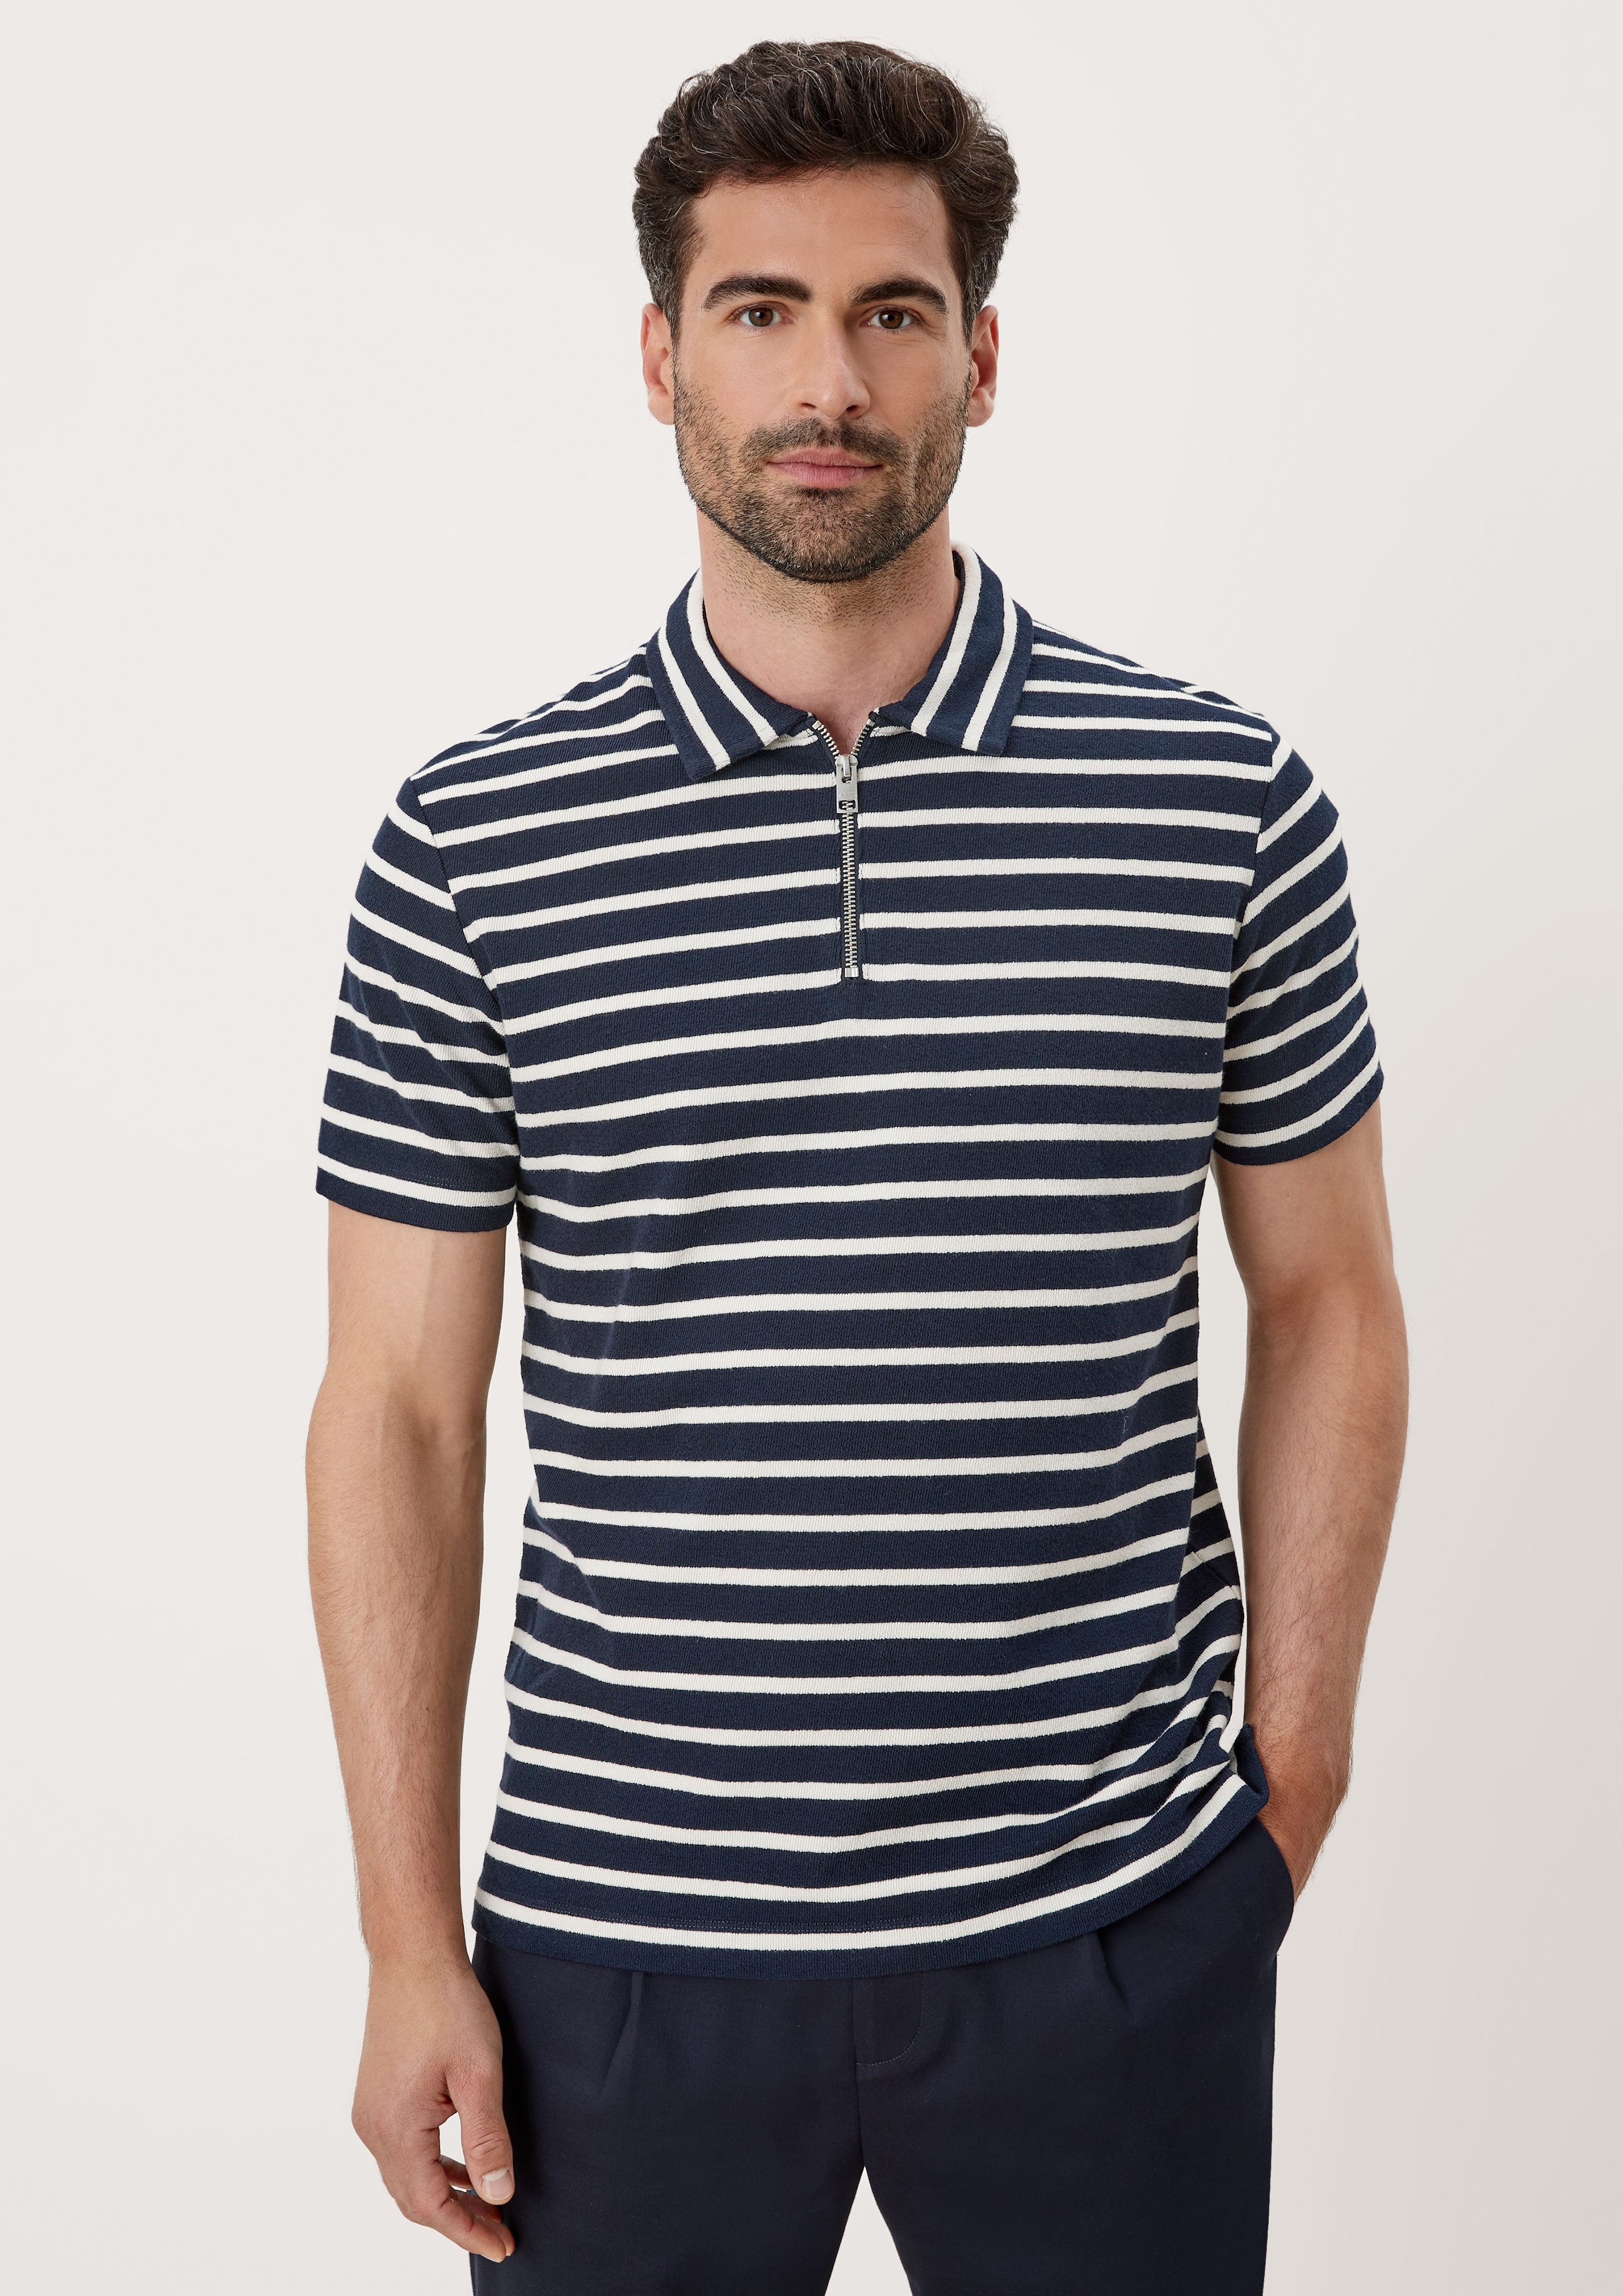 s.Oliver stripes Kurzarmshirt Poloshirt navy im Streifendesign